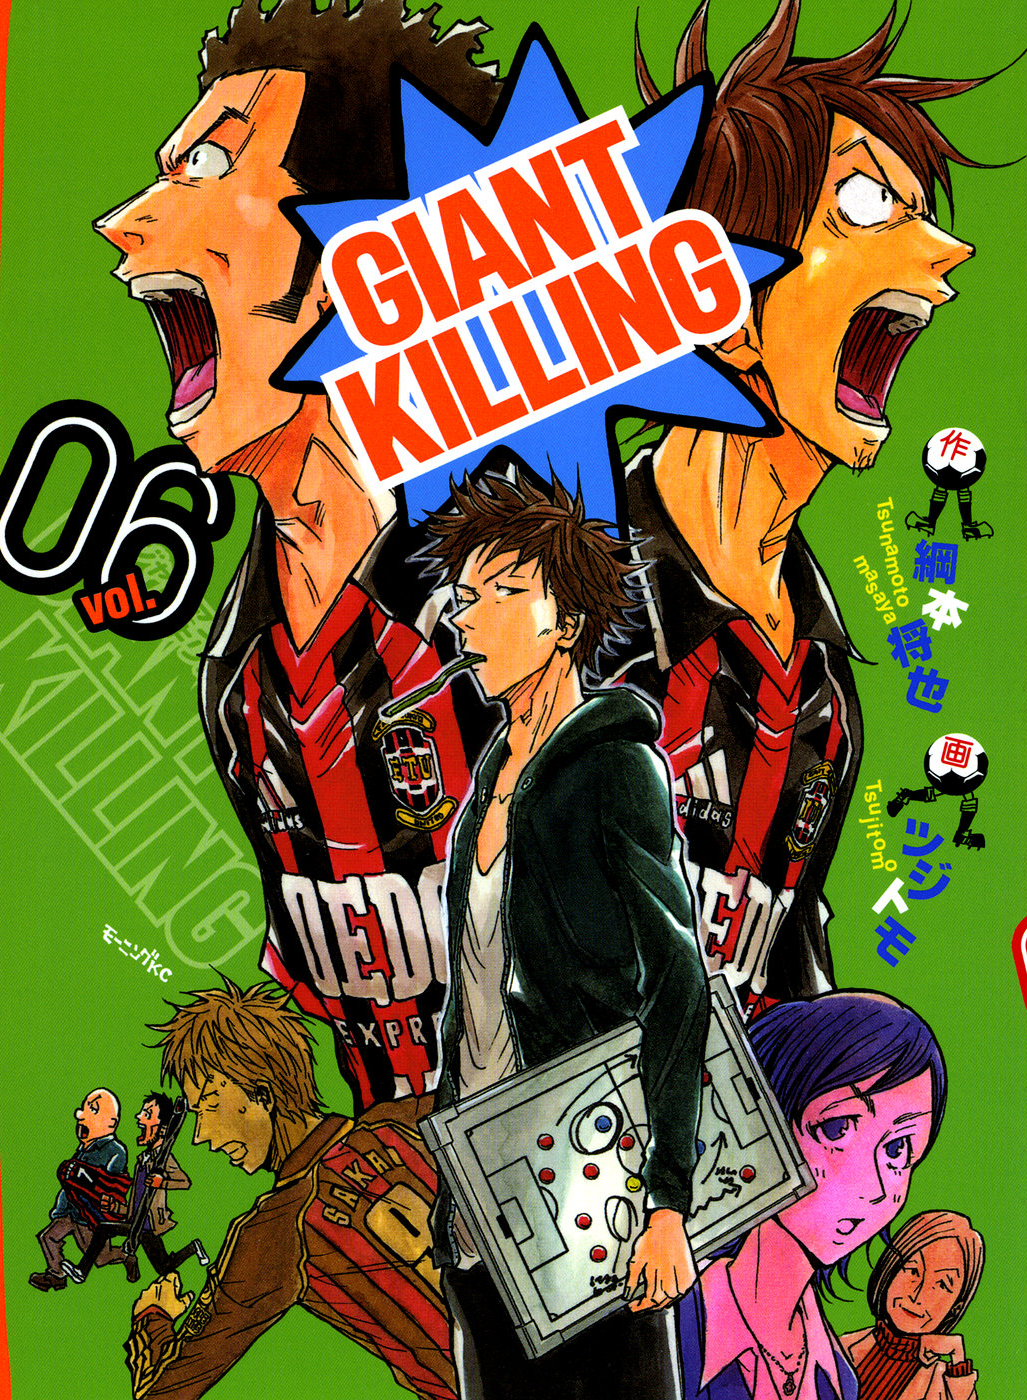 Giant Killing Volume 1 (Giant Killing) - Manga Store 